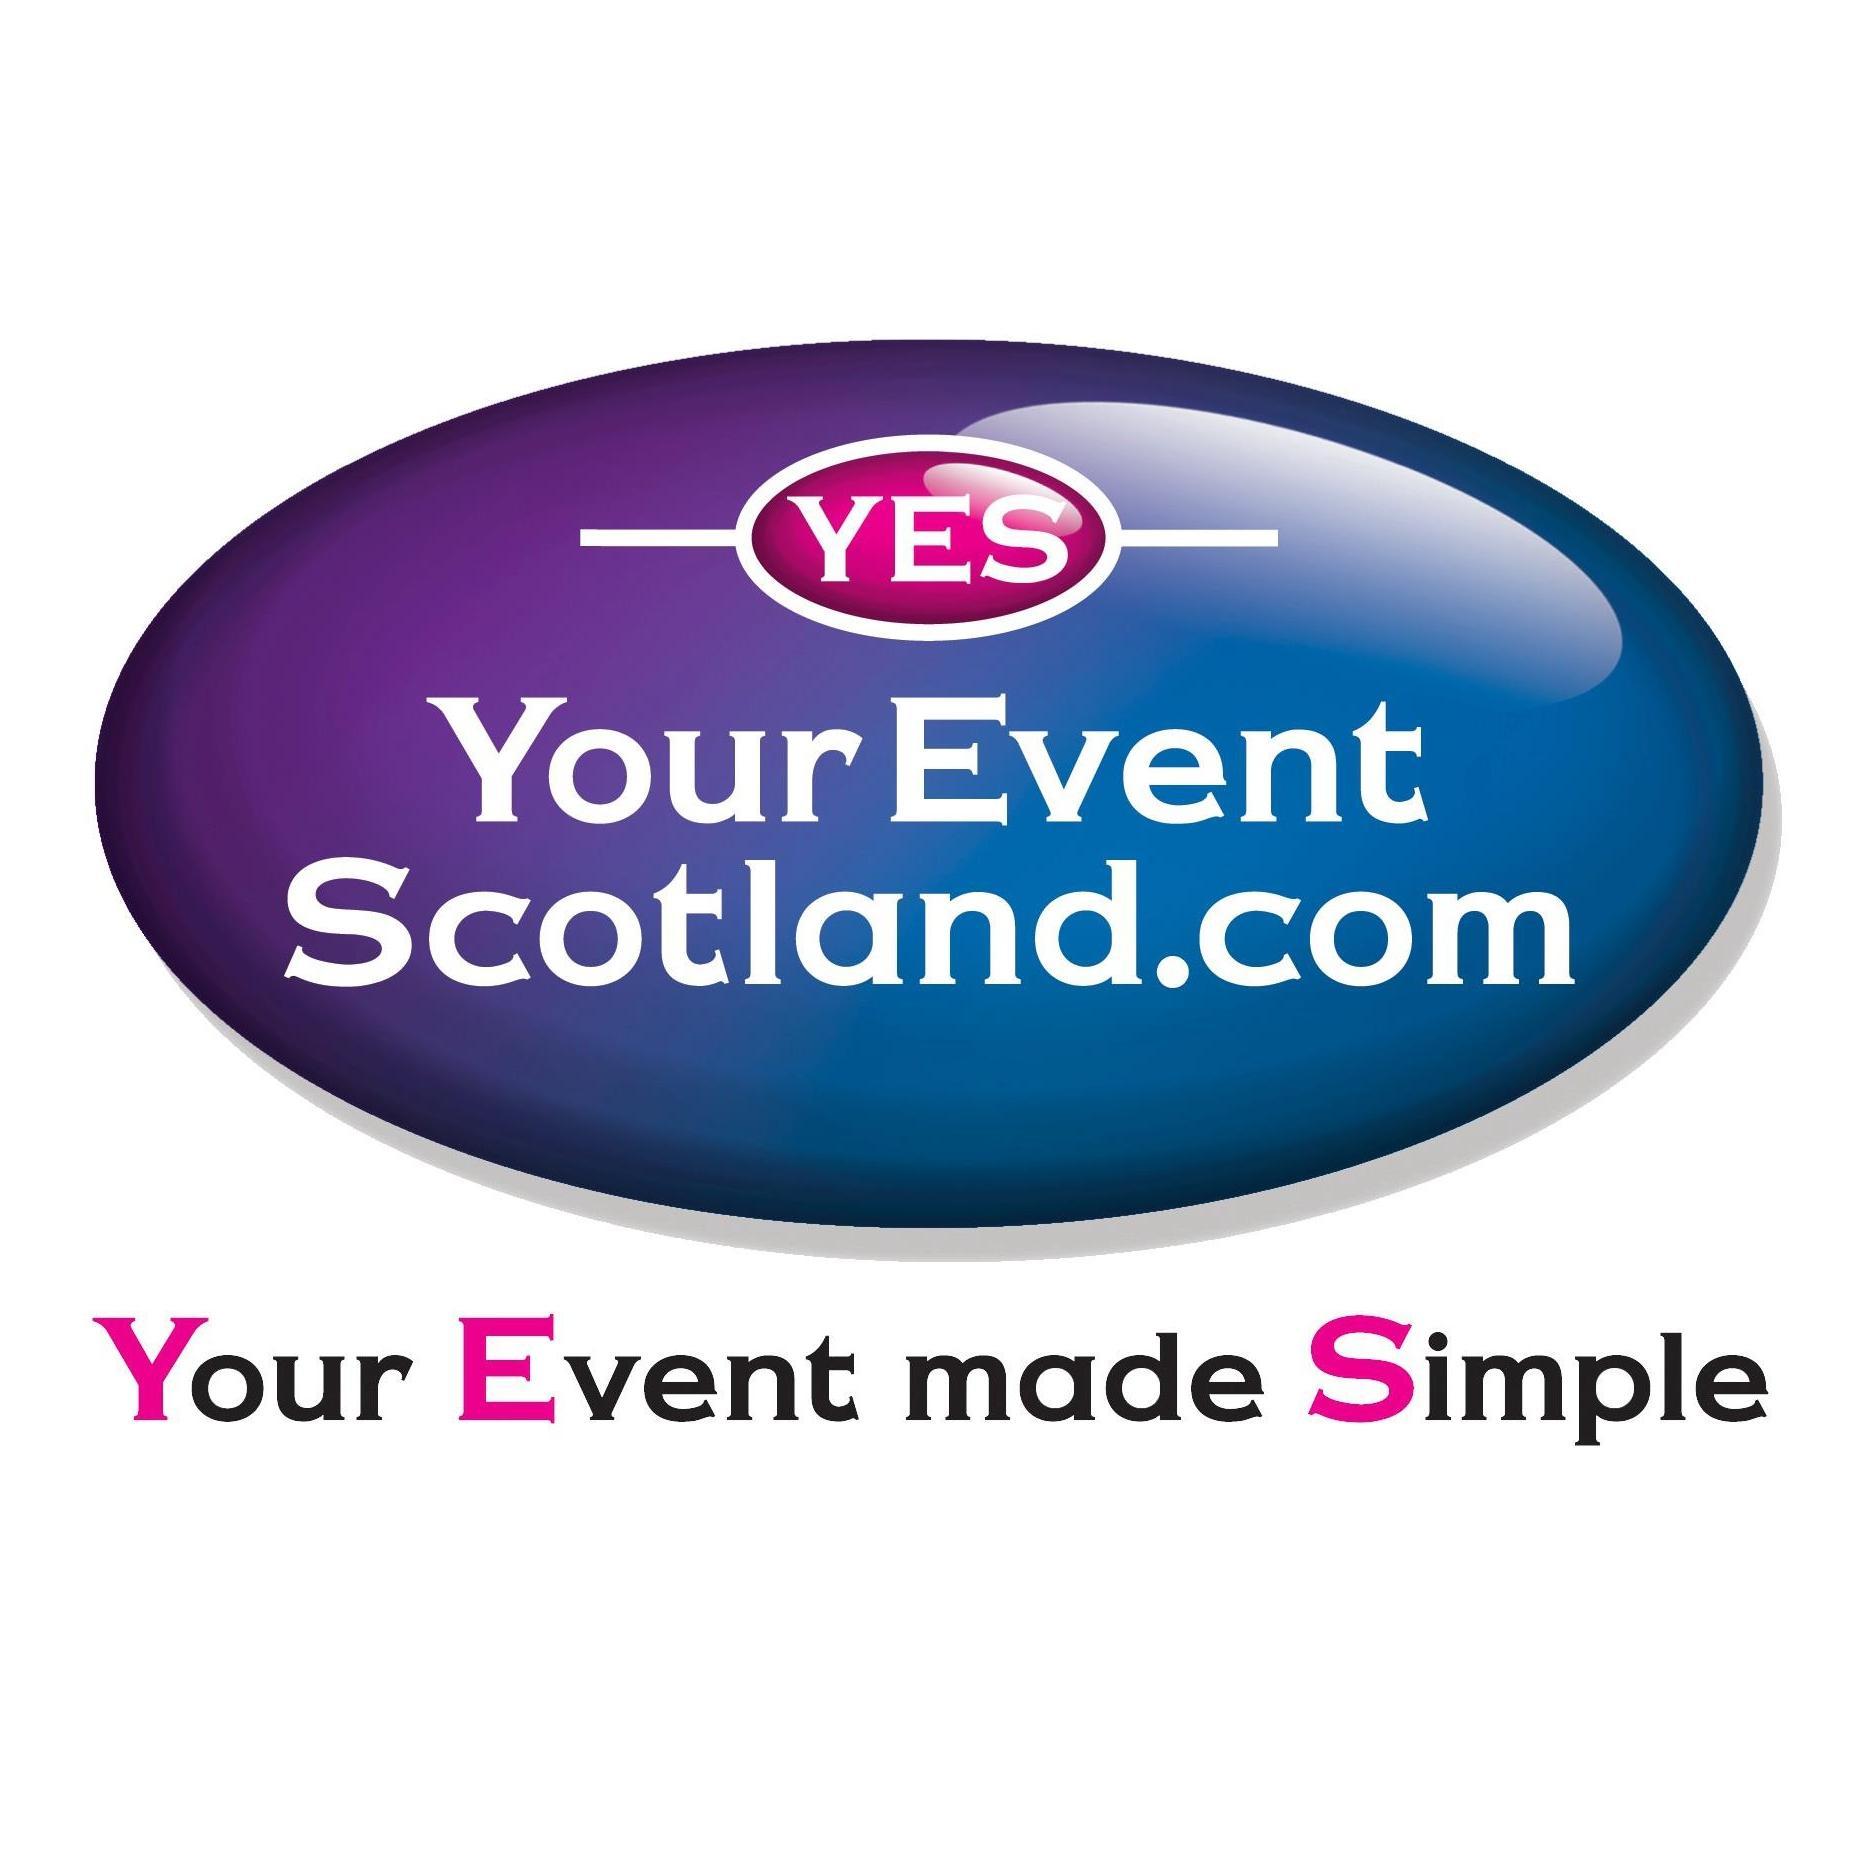 Your Event Scotland